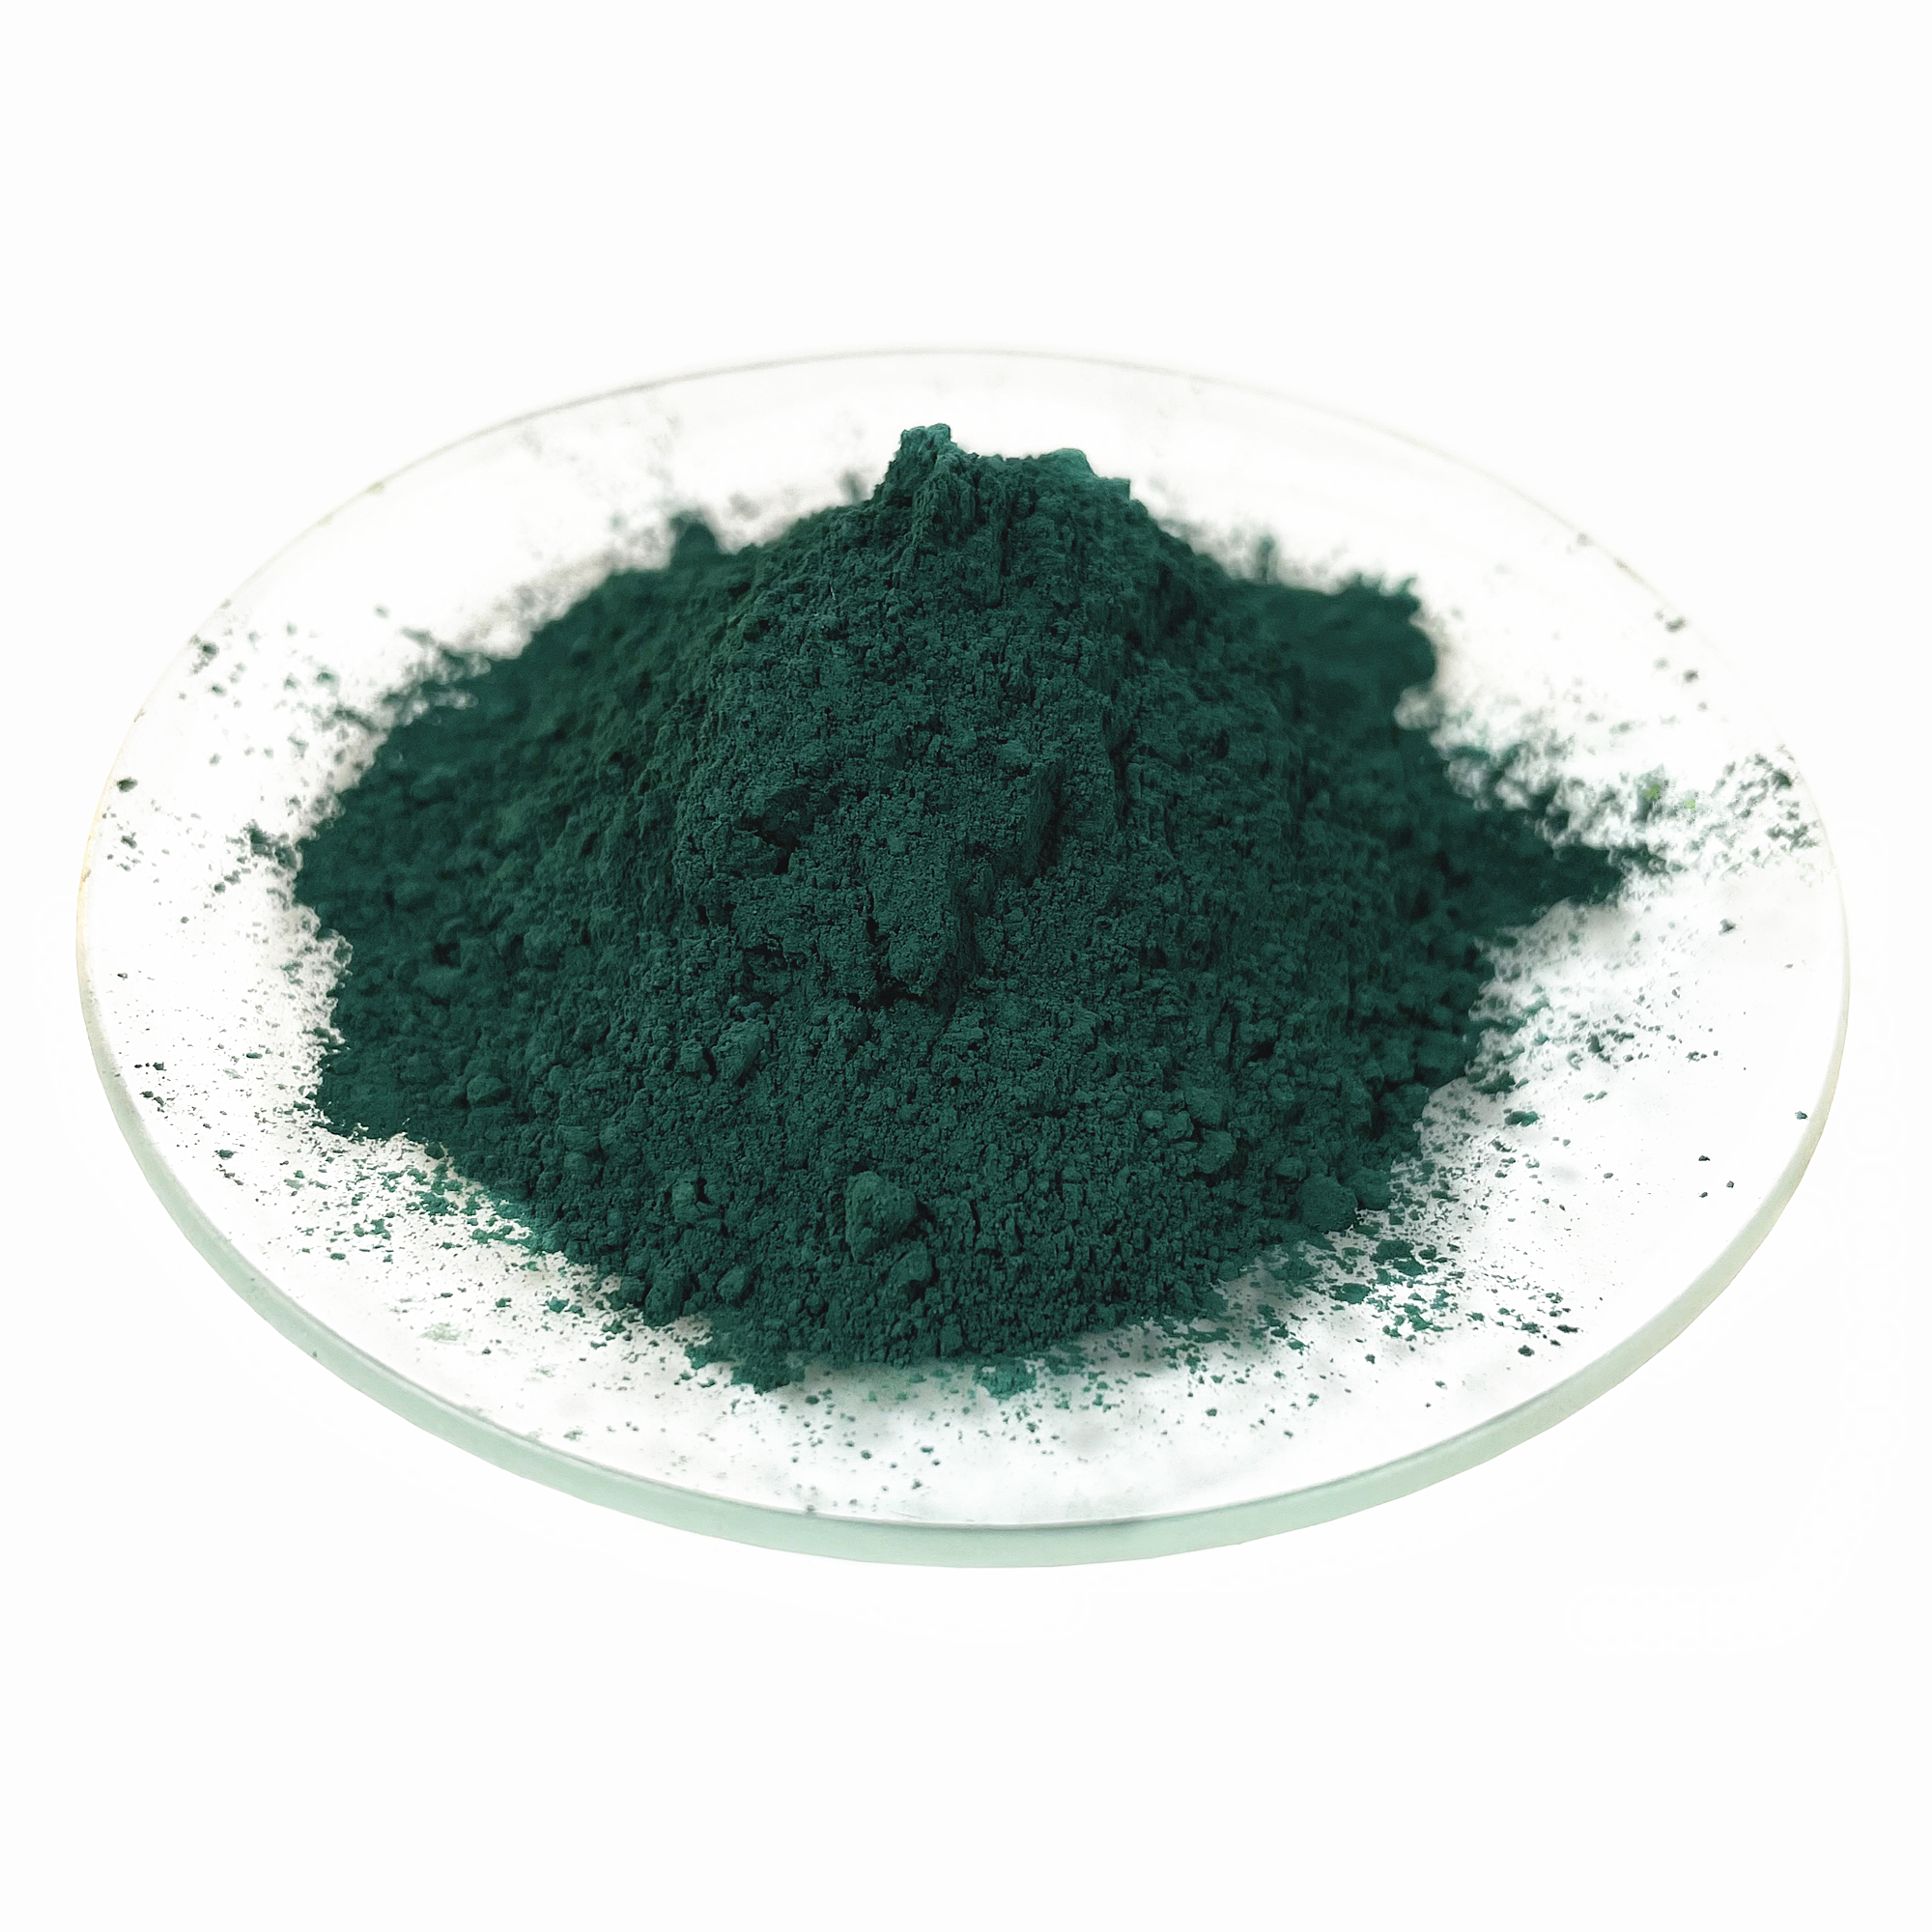 ผงเม็ดสีสีเขียวเหล็กออกไซด์สังเคราะห์สำหรับการทาสีแอสฟัลต์อิฐ